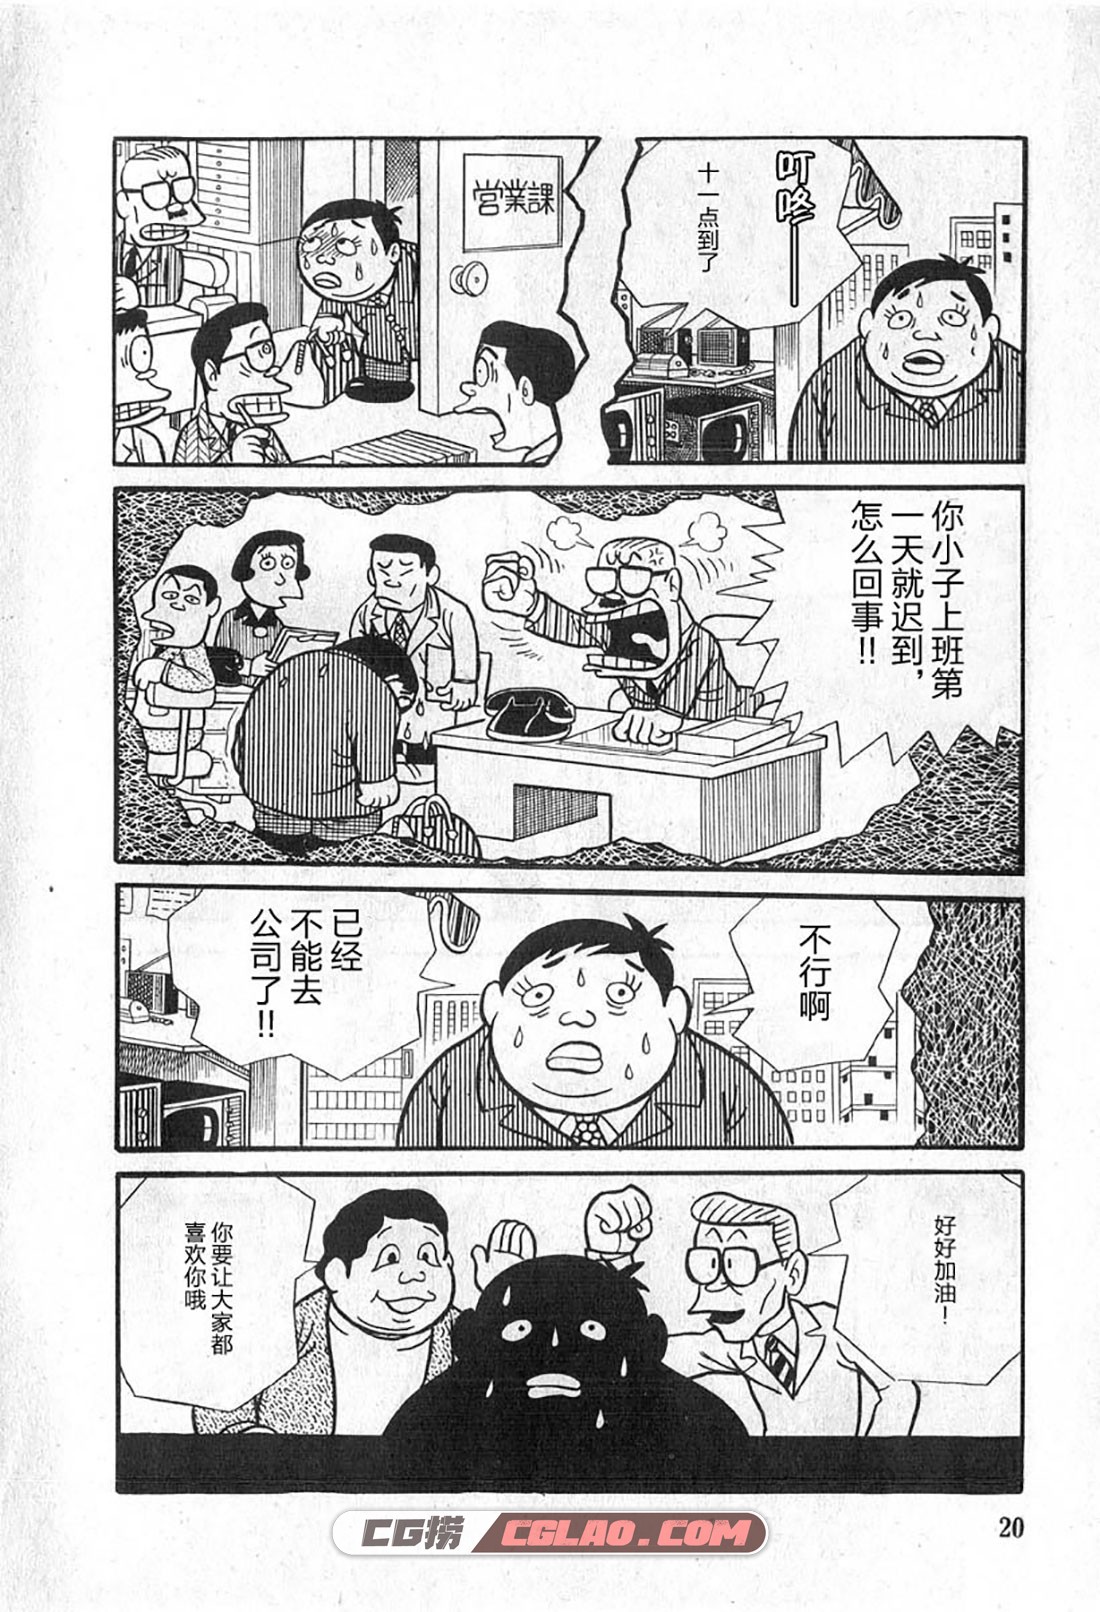 藤子不二雄A黑色幽默短篇集 1卷 短篇漫画百度云网盘下载,0019.jpg